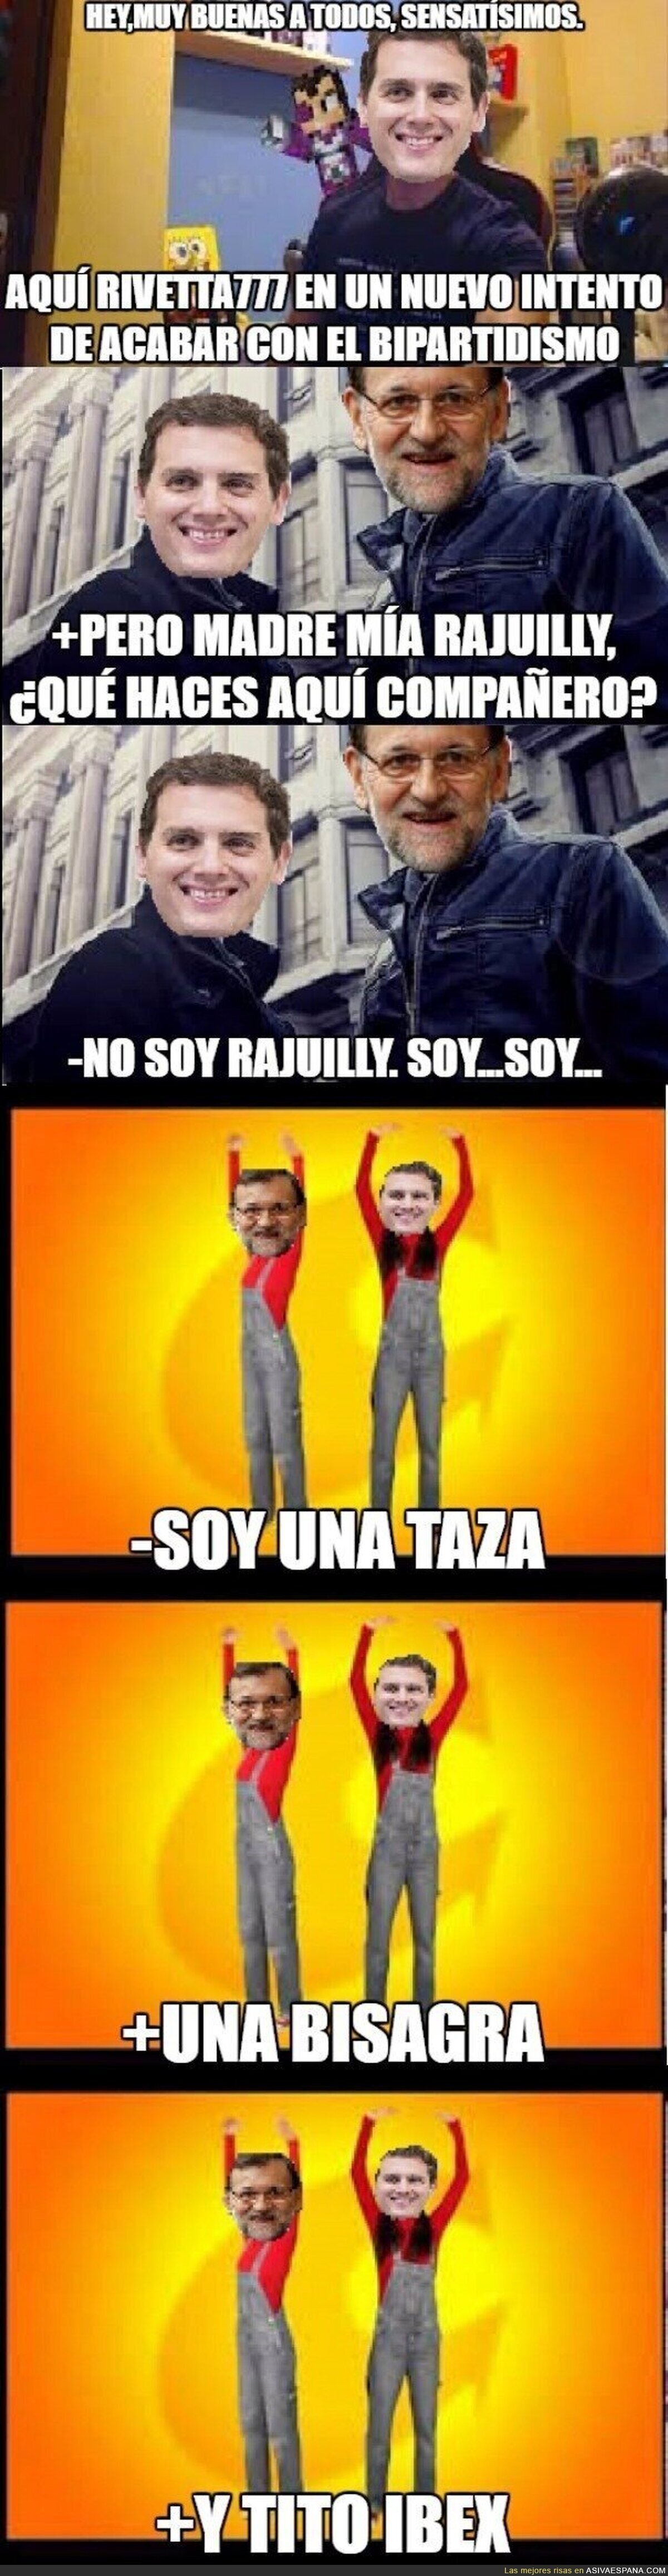 Rivera conoce a Rajoy Y PASA ESTO